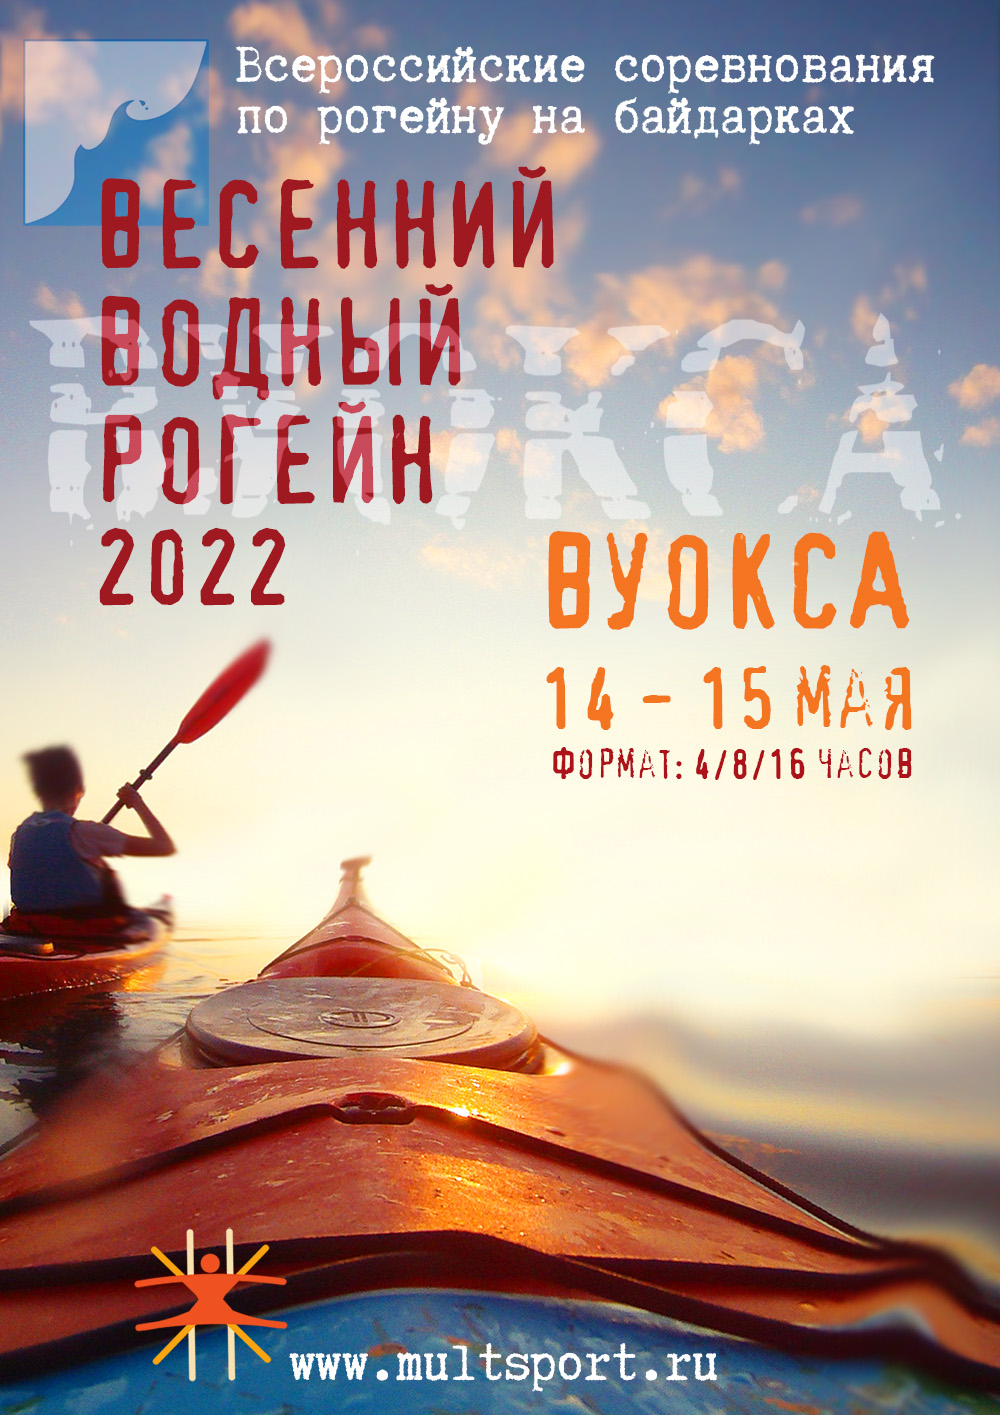 Всероссийские соревнования по рогейну на байдарках. Весенний водный рогейн 2022